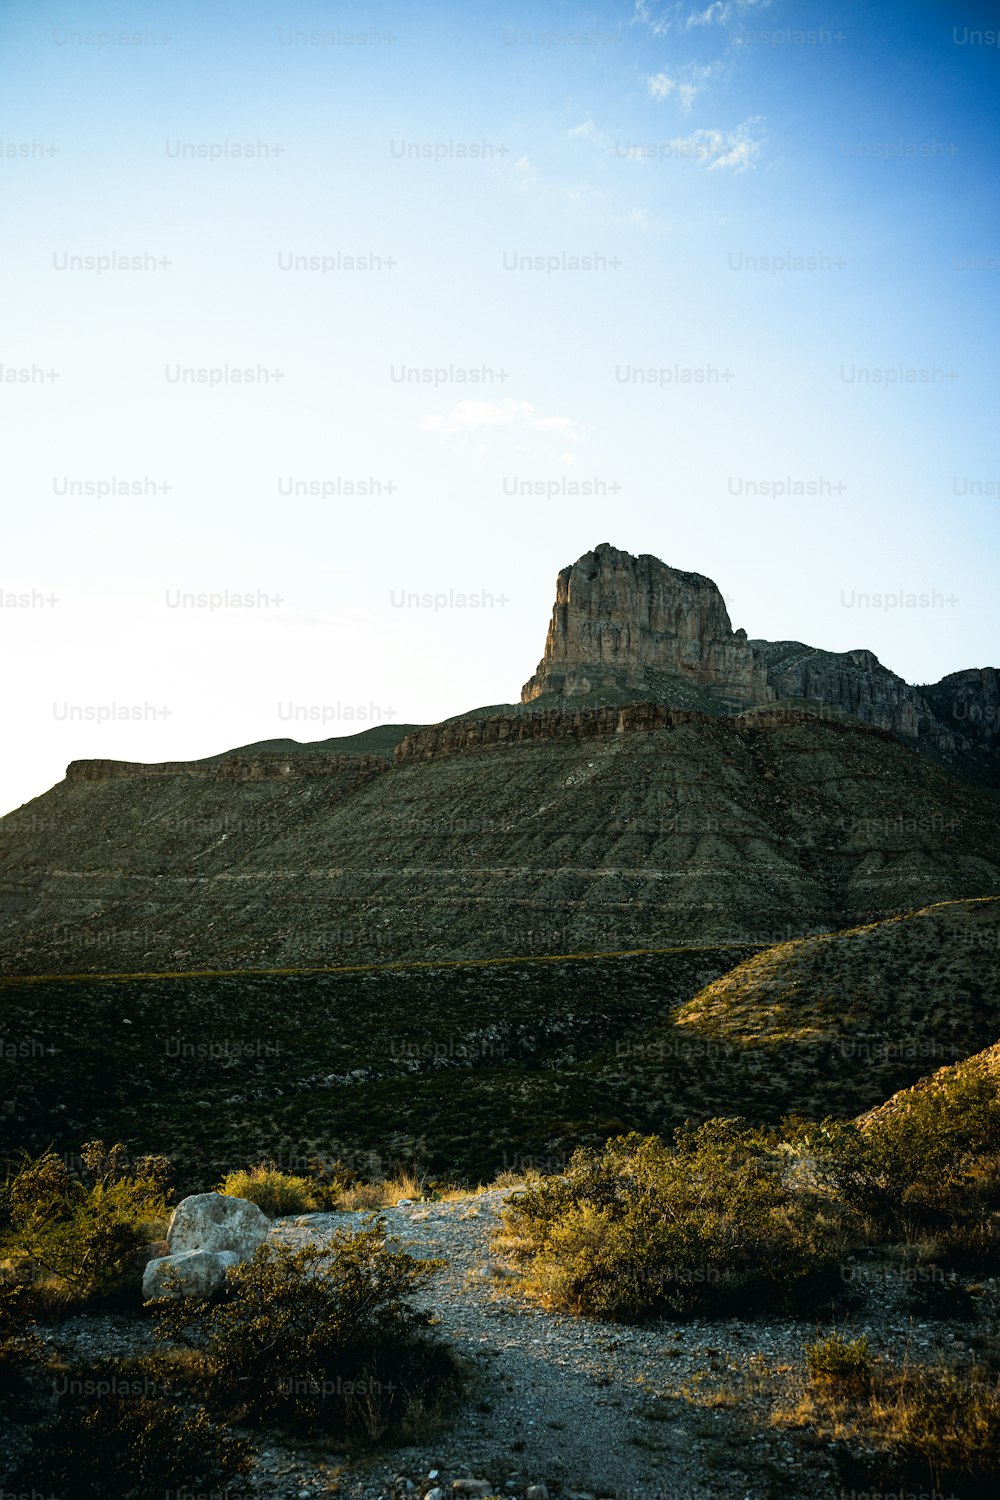 uma grande montanha com uma rocha muito alta no topo dela